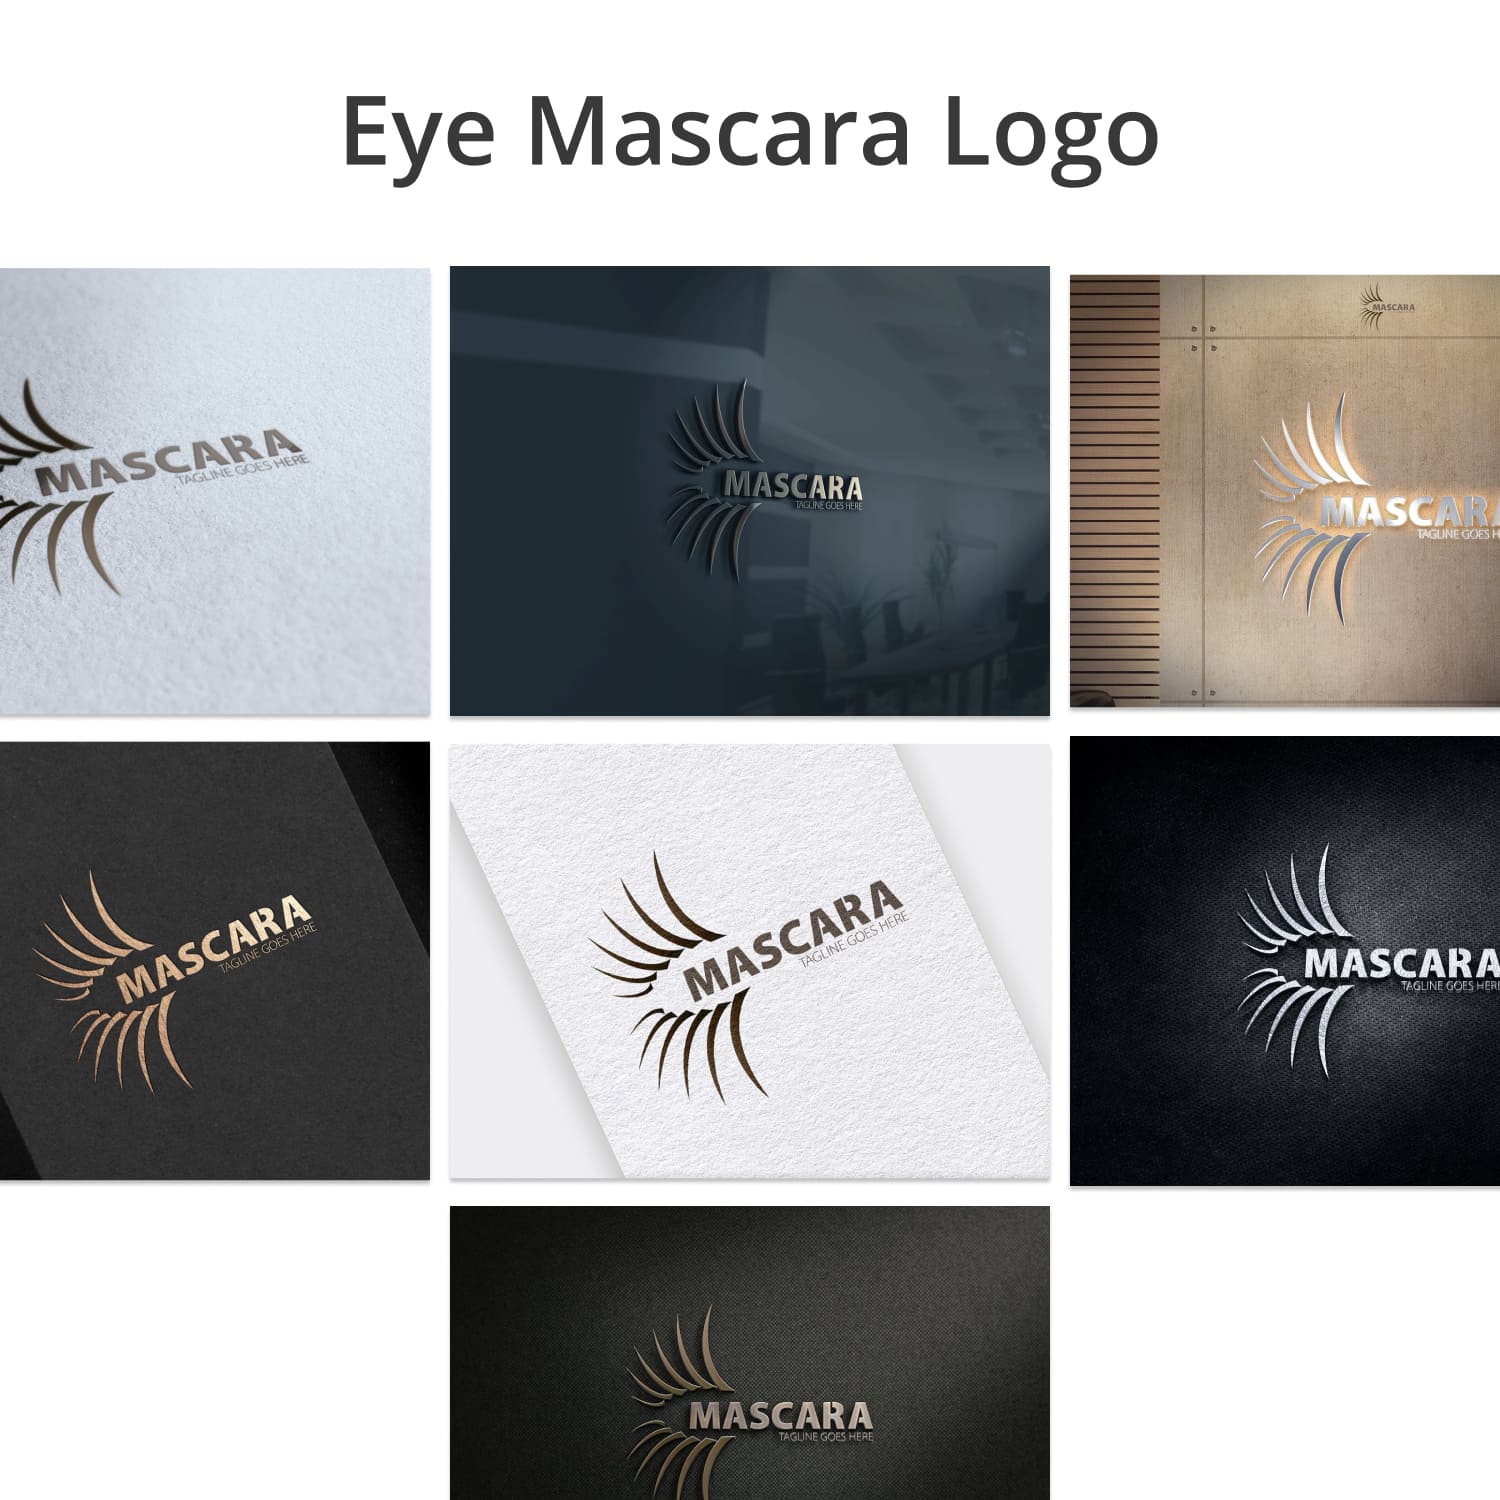 Eye Mascara Logo cover image.